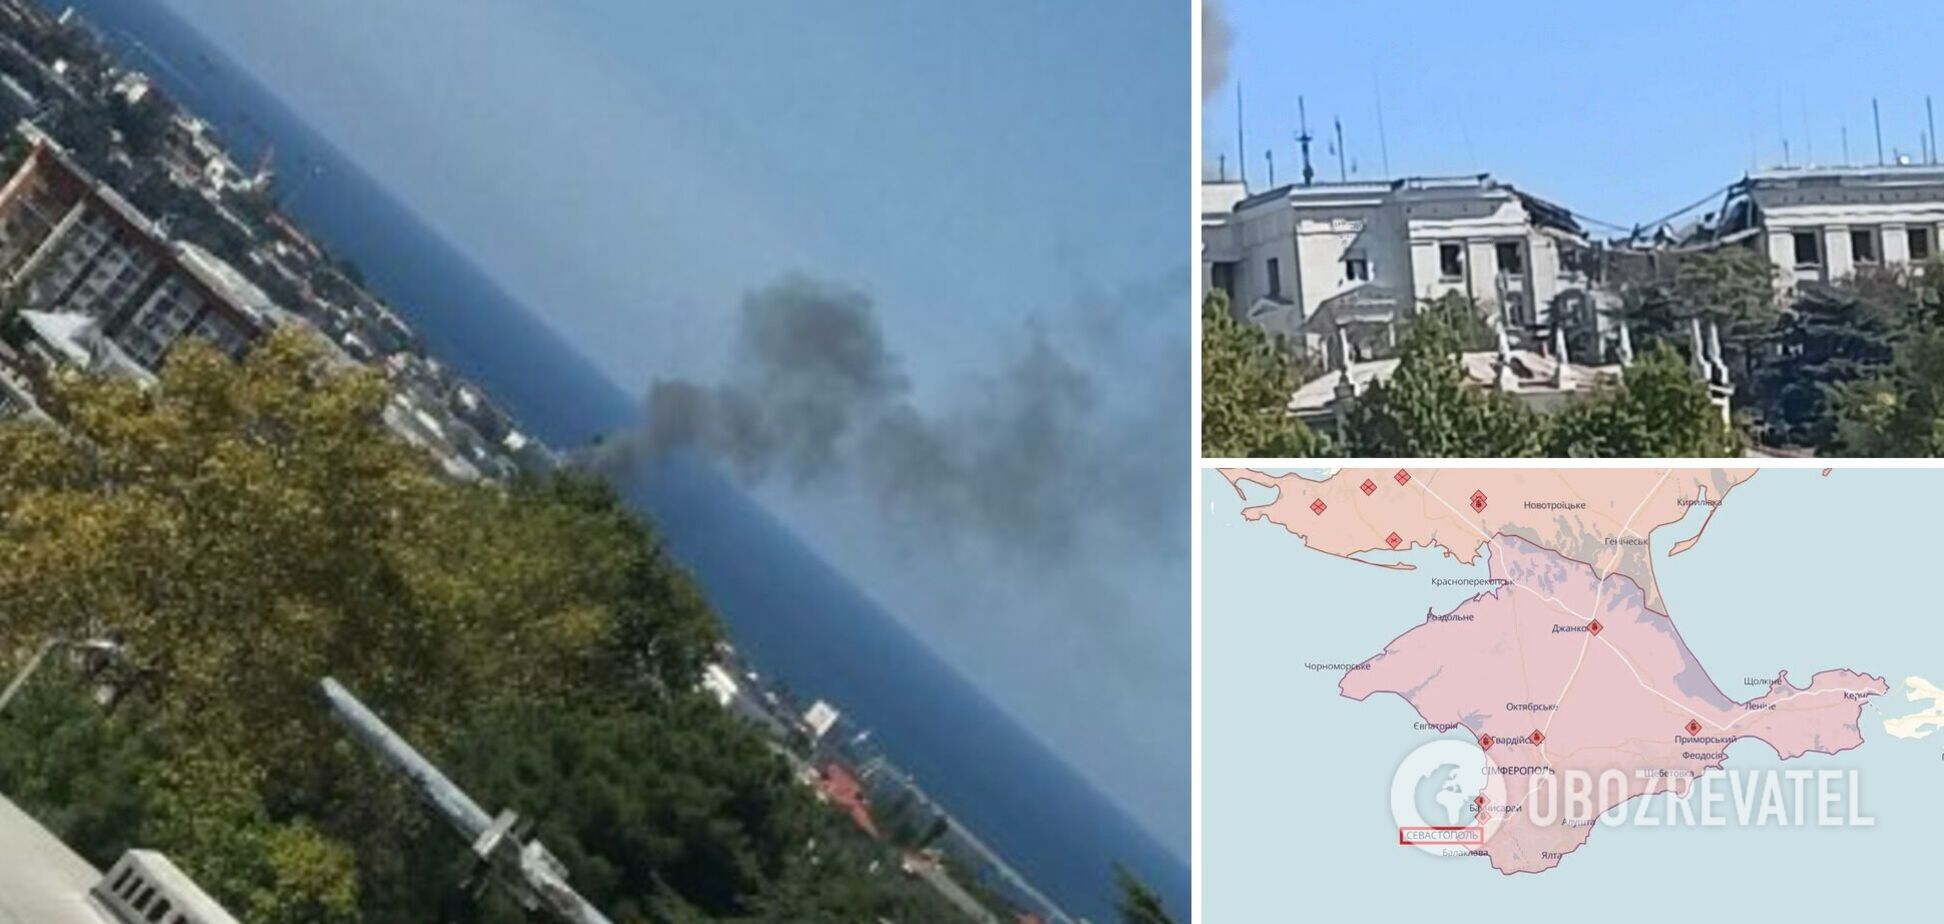 Поднялся черный дым: в Севастополе нанесен удар по штабу ЧФ РФ, есть разрушения и погибший. Фото и видео